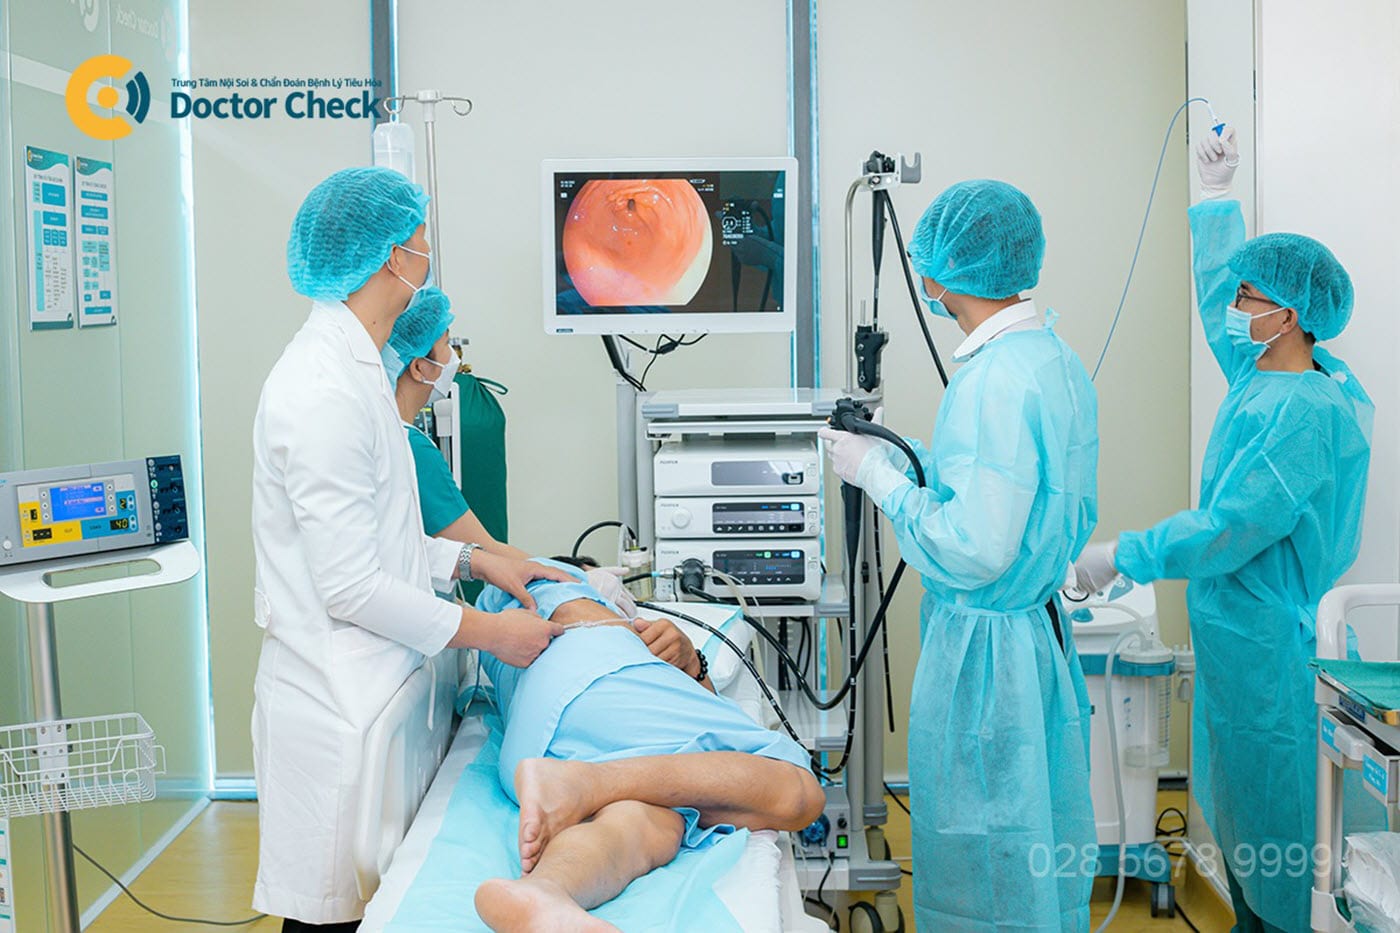 Endo Clinic trang bị thiết bị hiện đại, hỗ trợ tối đa bác sĩ chẩn đoán và điều trị bệnh